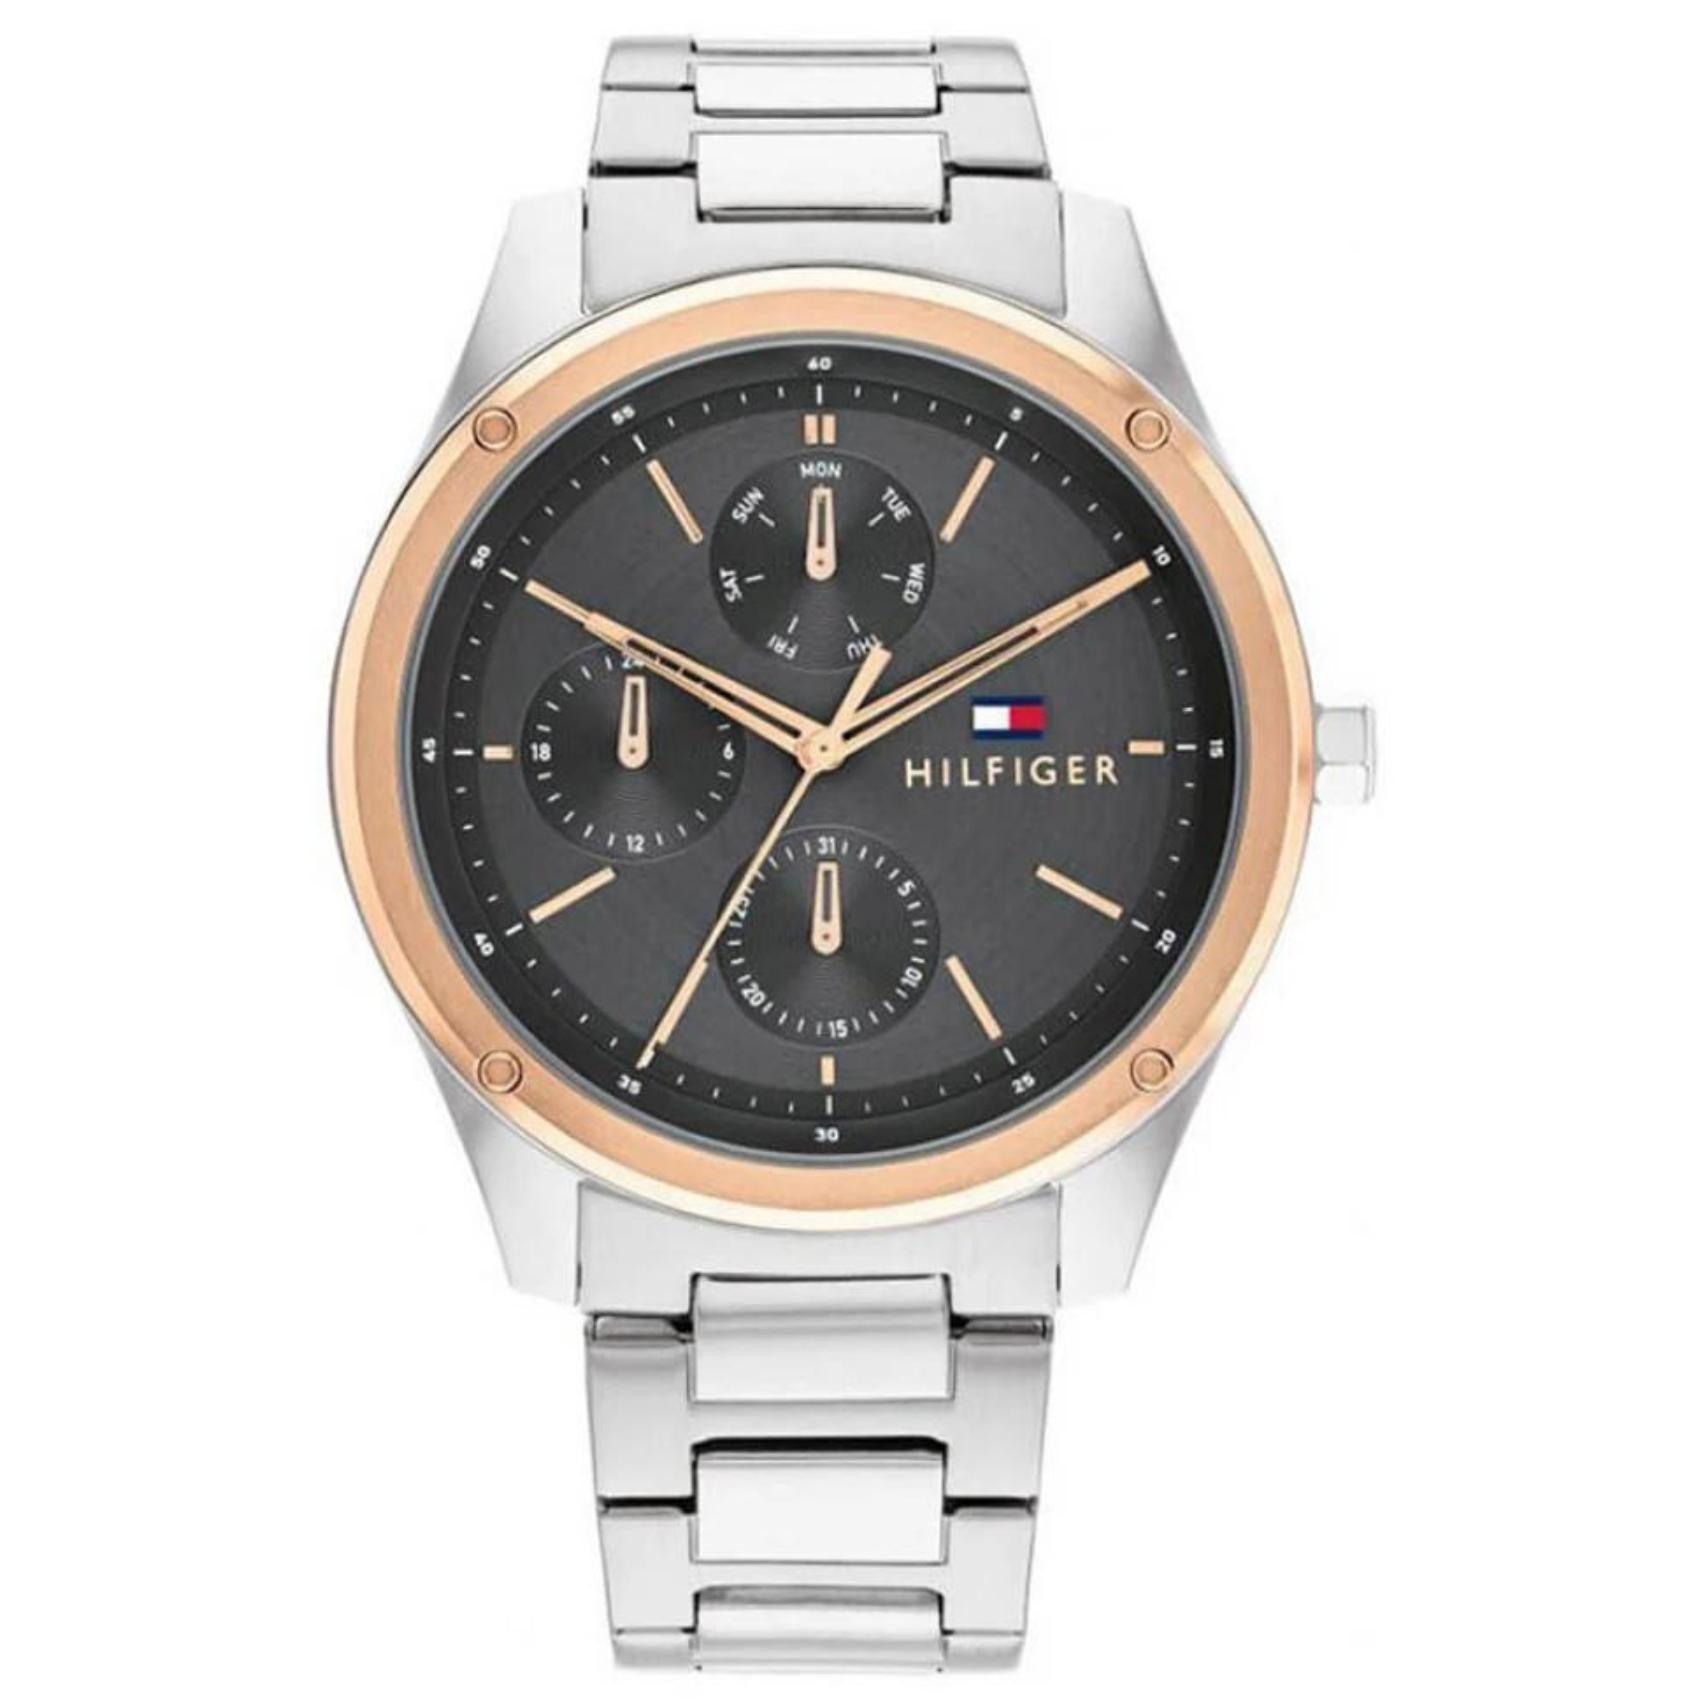 Ανδρικό ρολόι Tommy Hilfiger Tyler 1710541 με ασημί ατσάλινο μπρασελέ και μαύρο καντράν διαμέτρου 43mm με ημερομηνία-ημέρα.